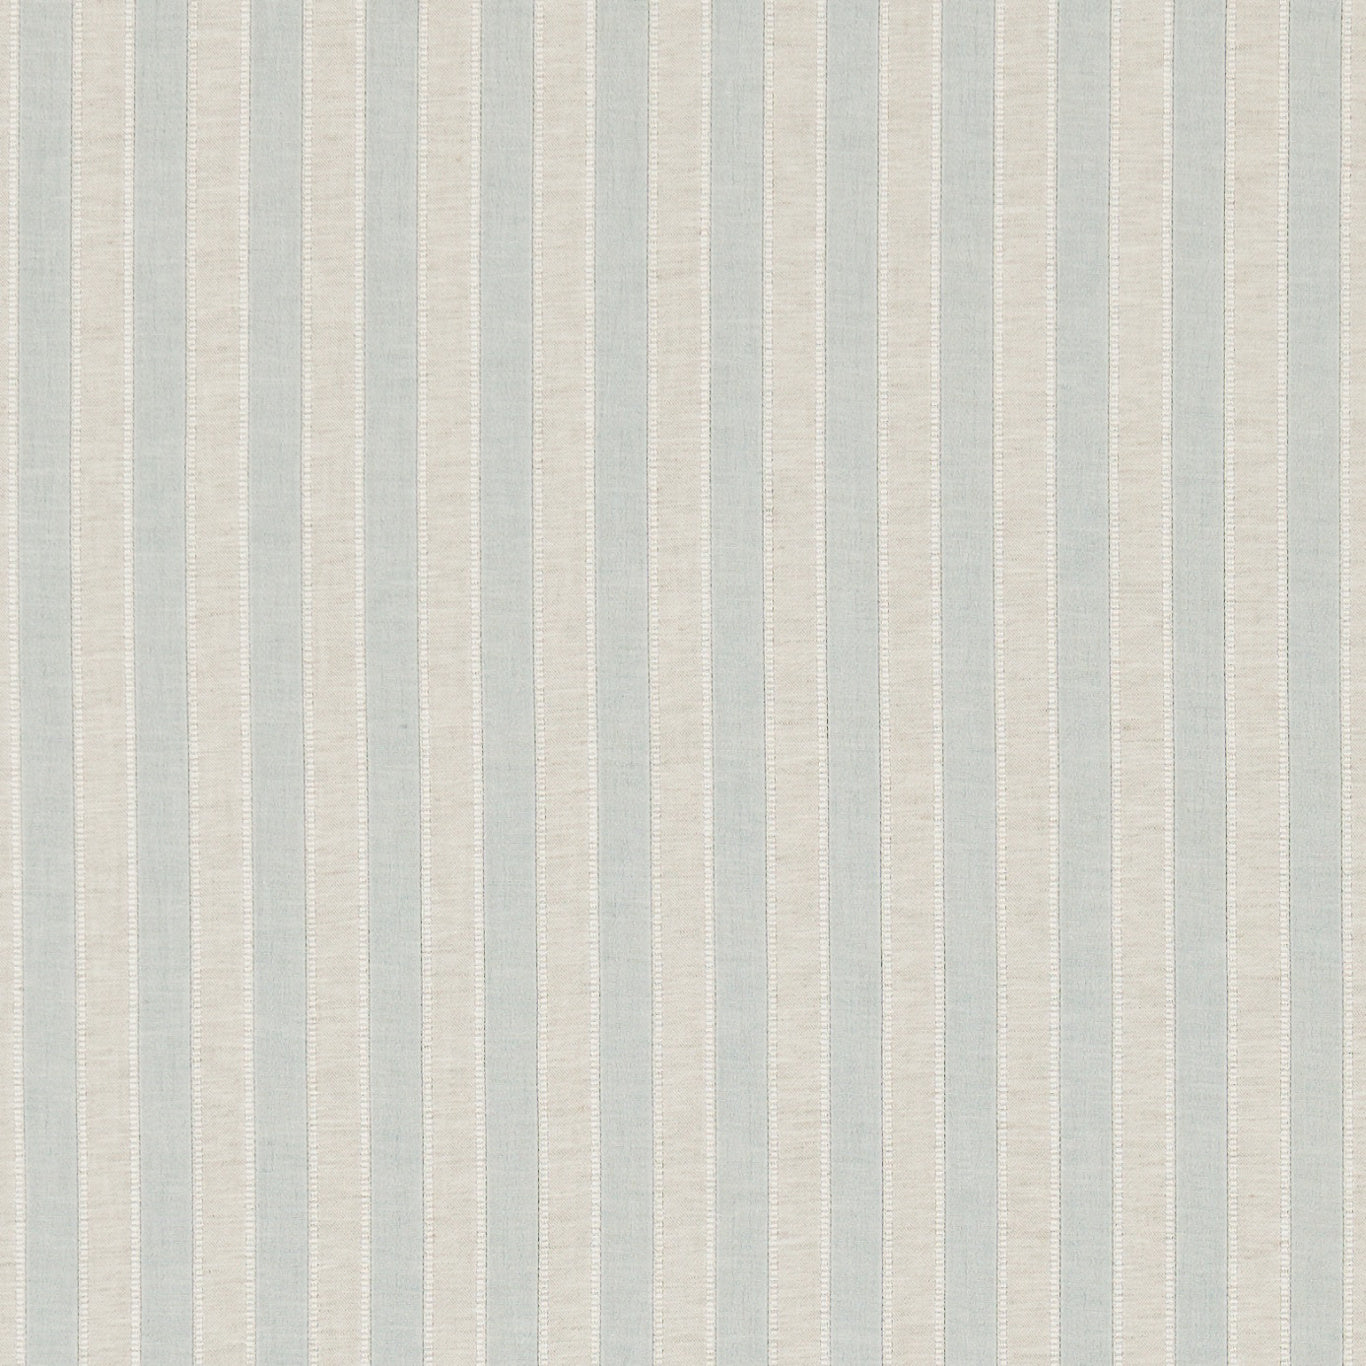 Sorilla Stripe Eggshell/Linen Fabric By Sanderson